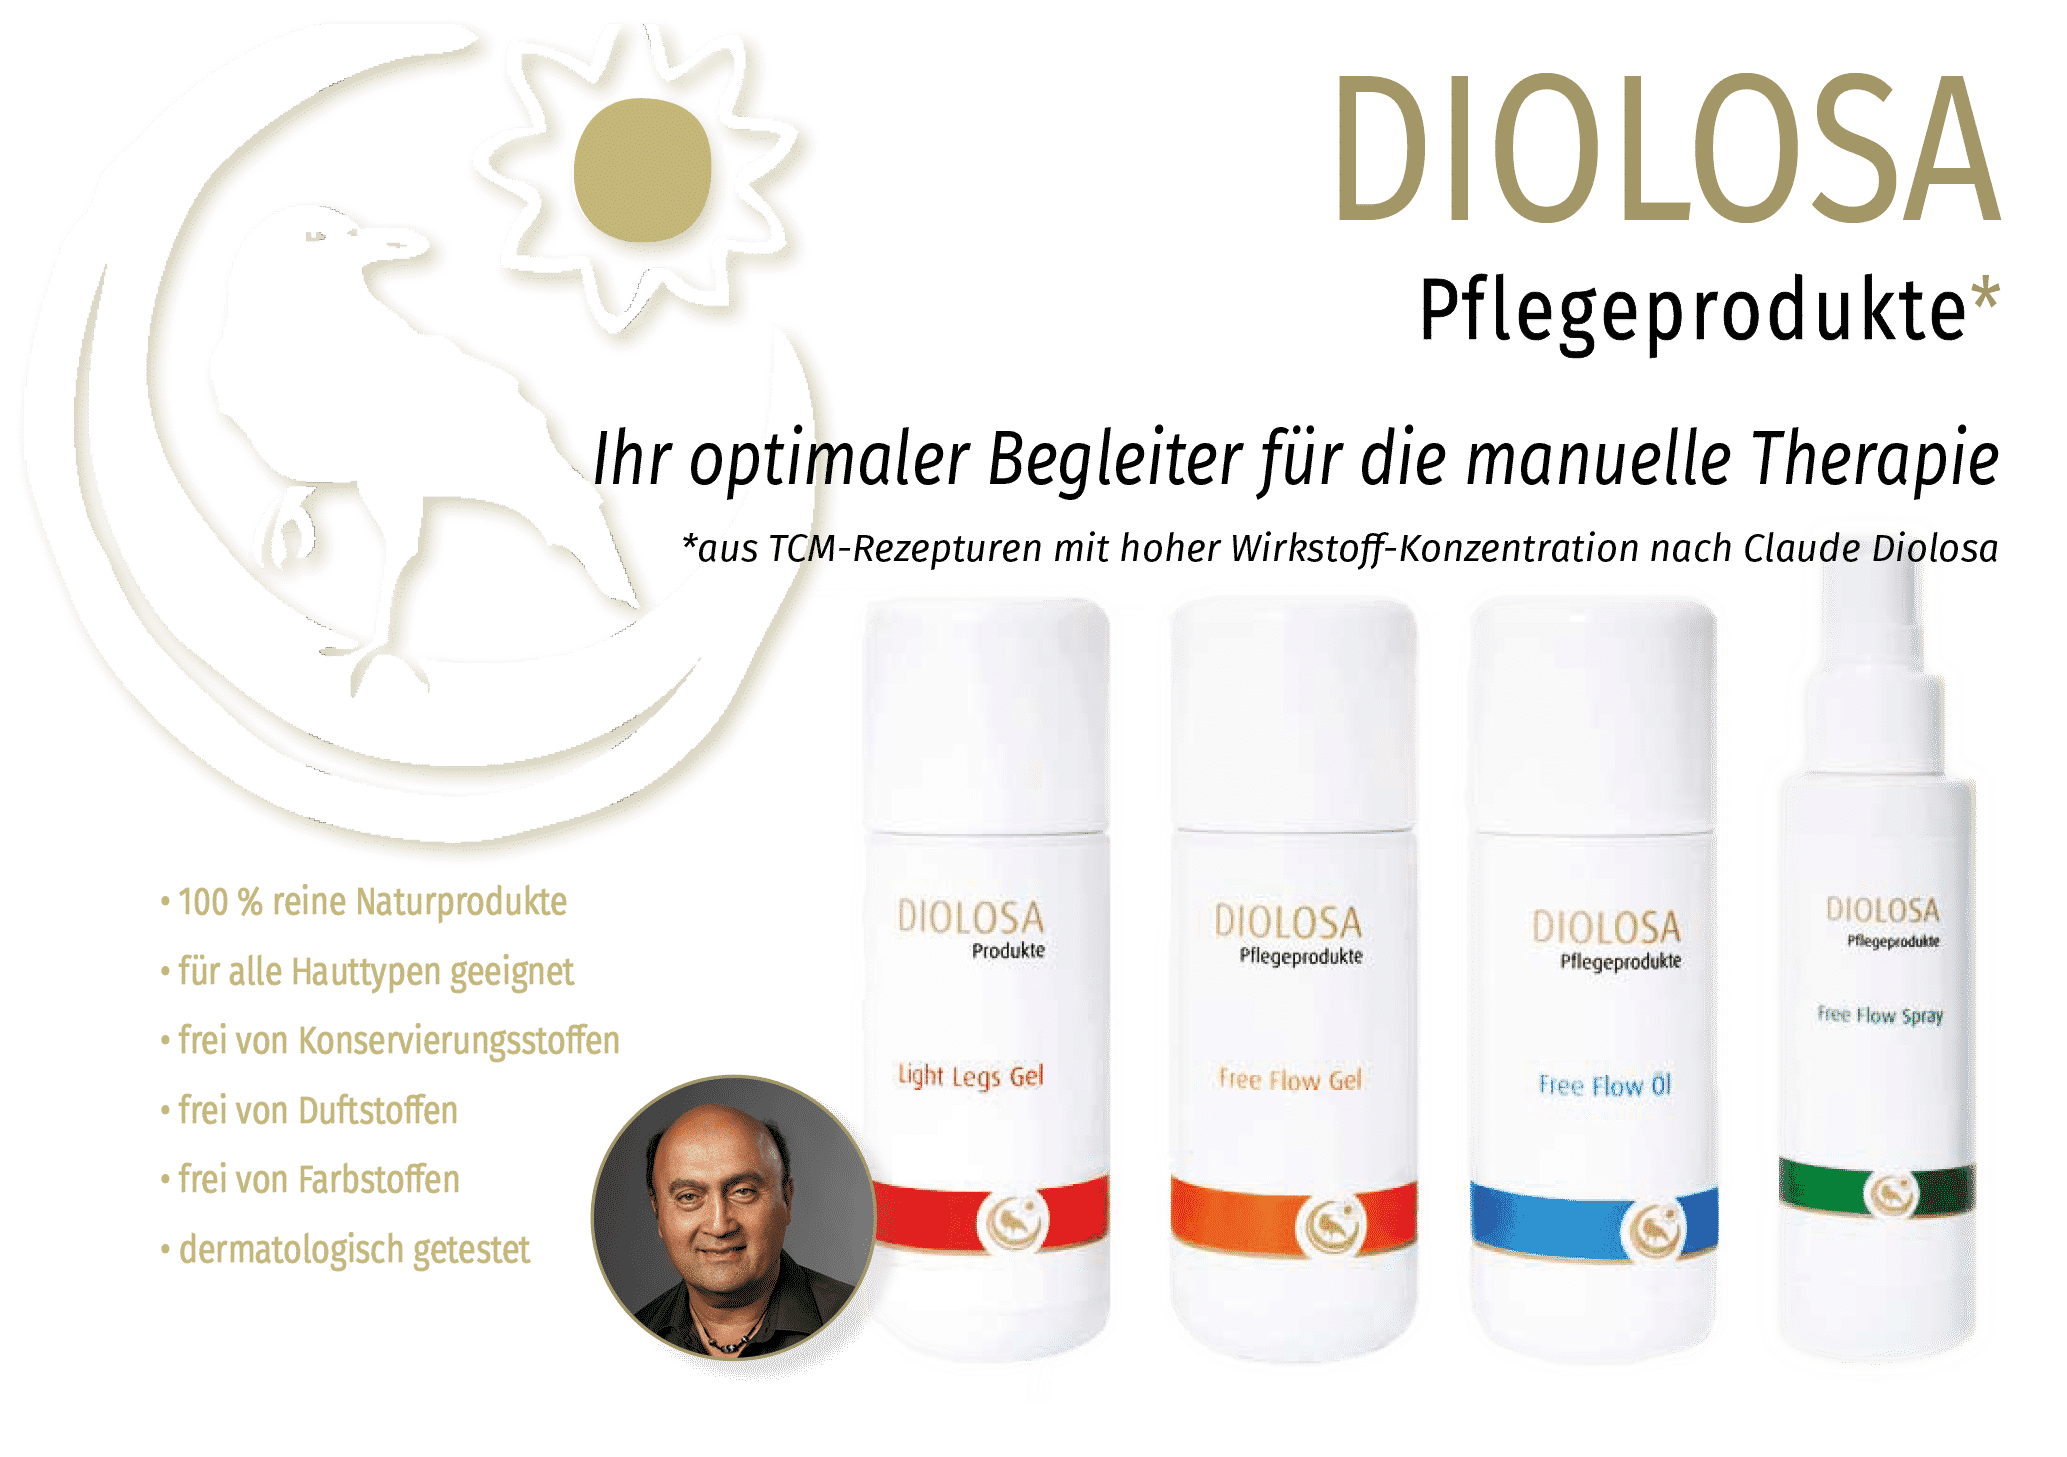 Diolosa Pflegeprodukte - dermatologisch getestet und als Kosmetikprodukt zertifiziert